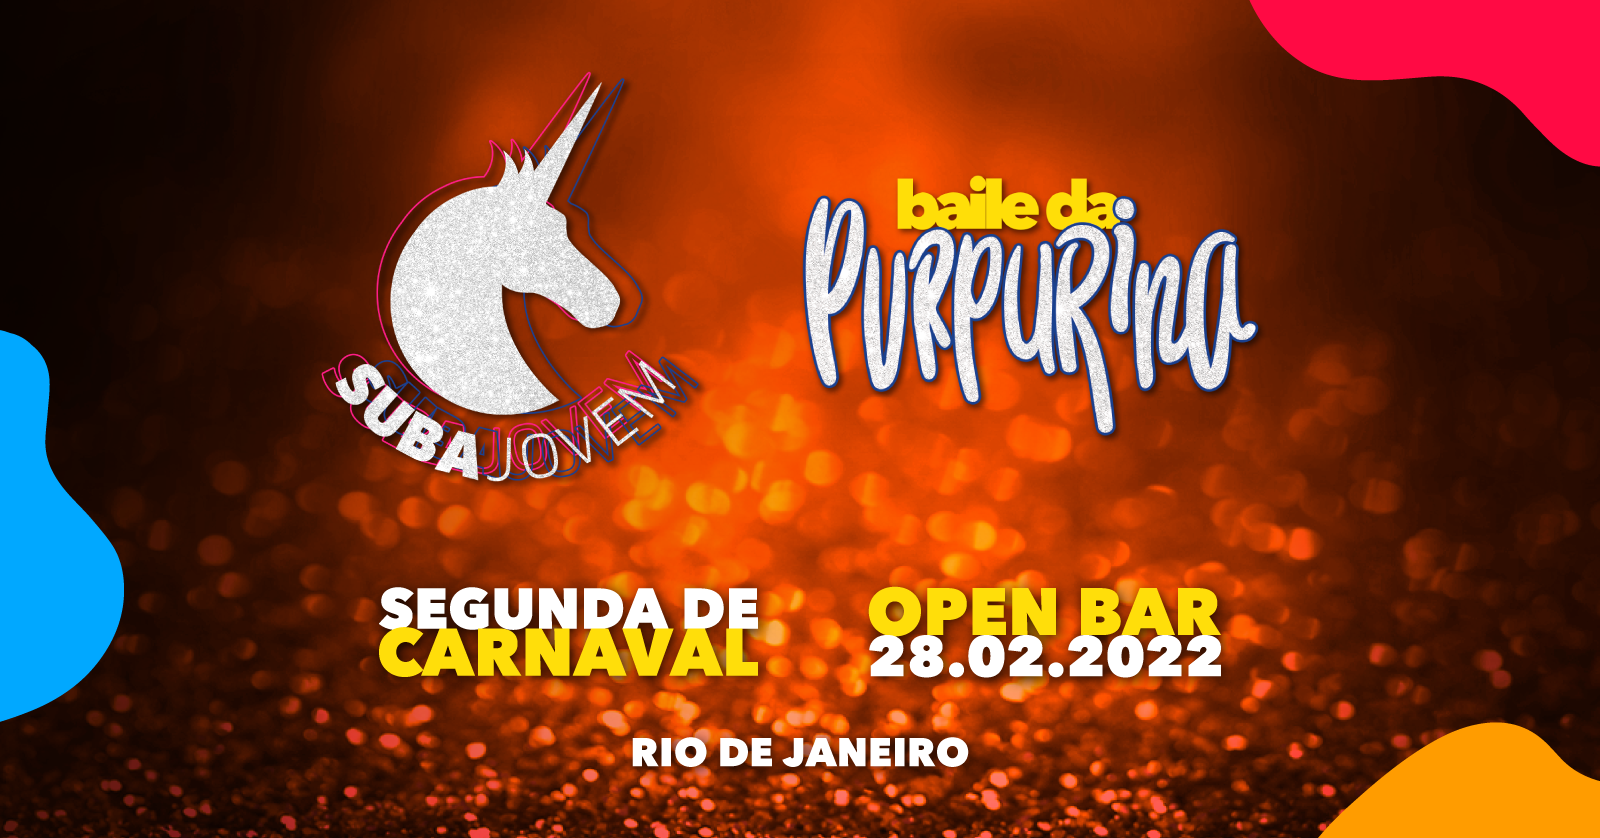 SubaJovem Baile da Purpurina Carnaval 2022 Open Bar